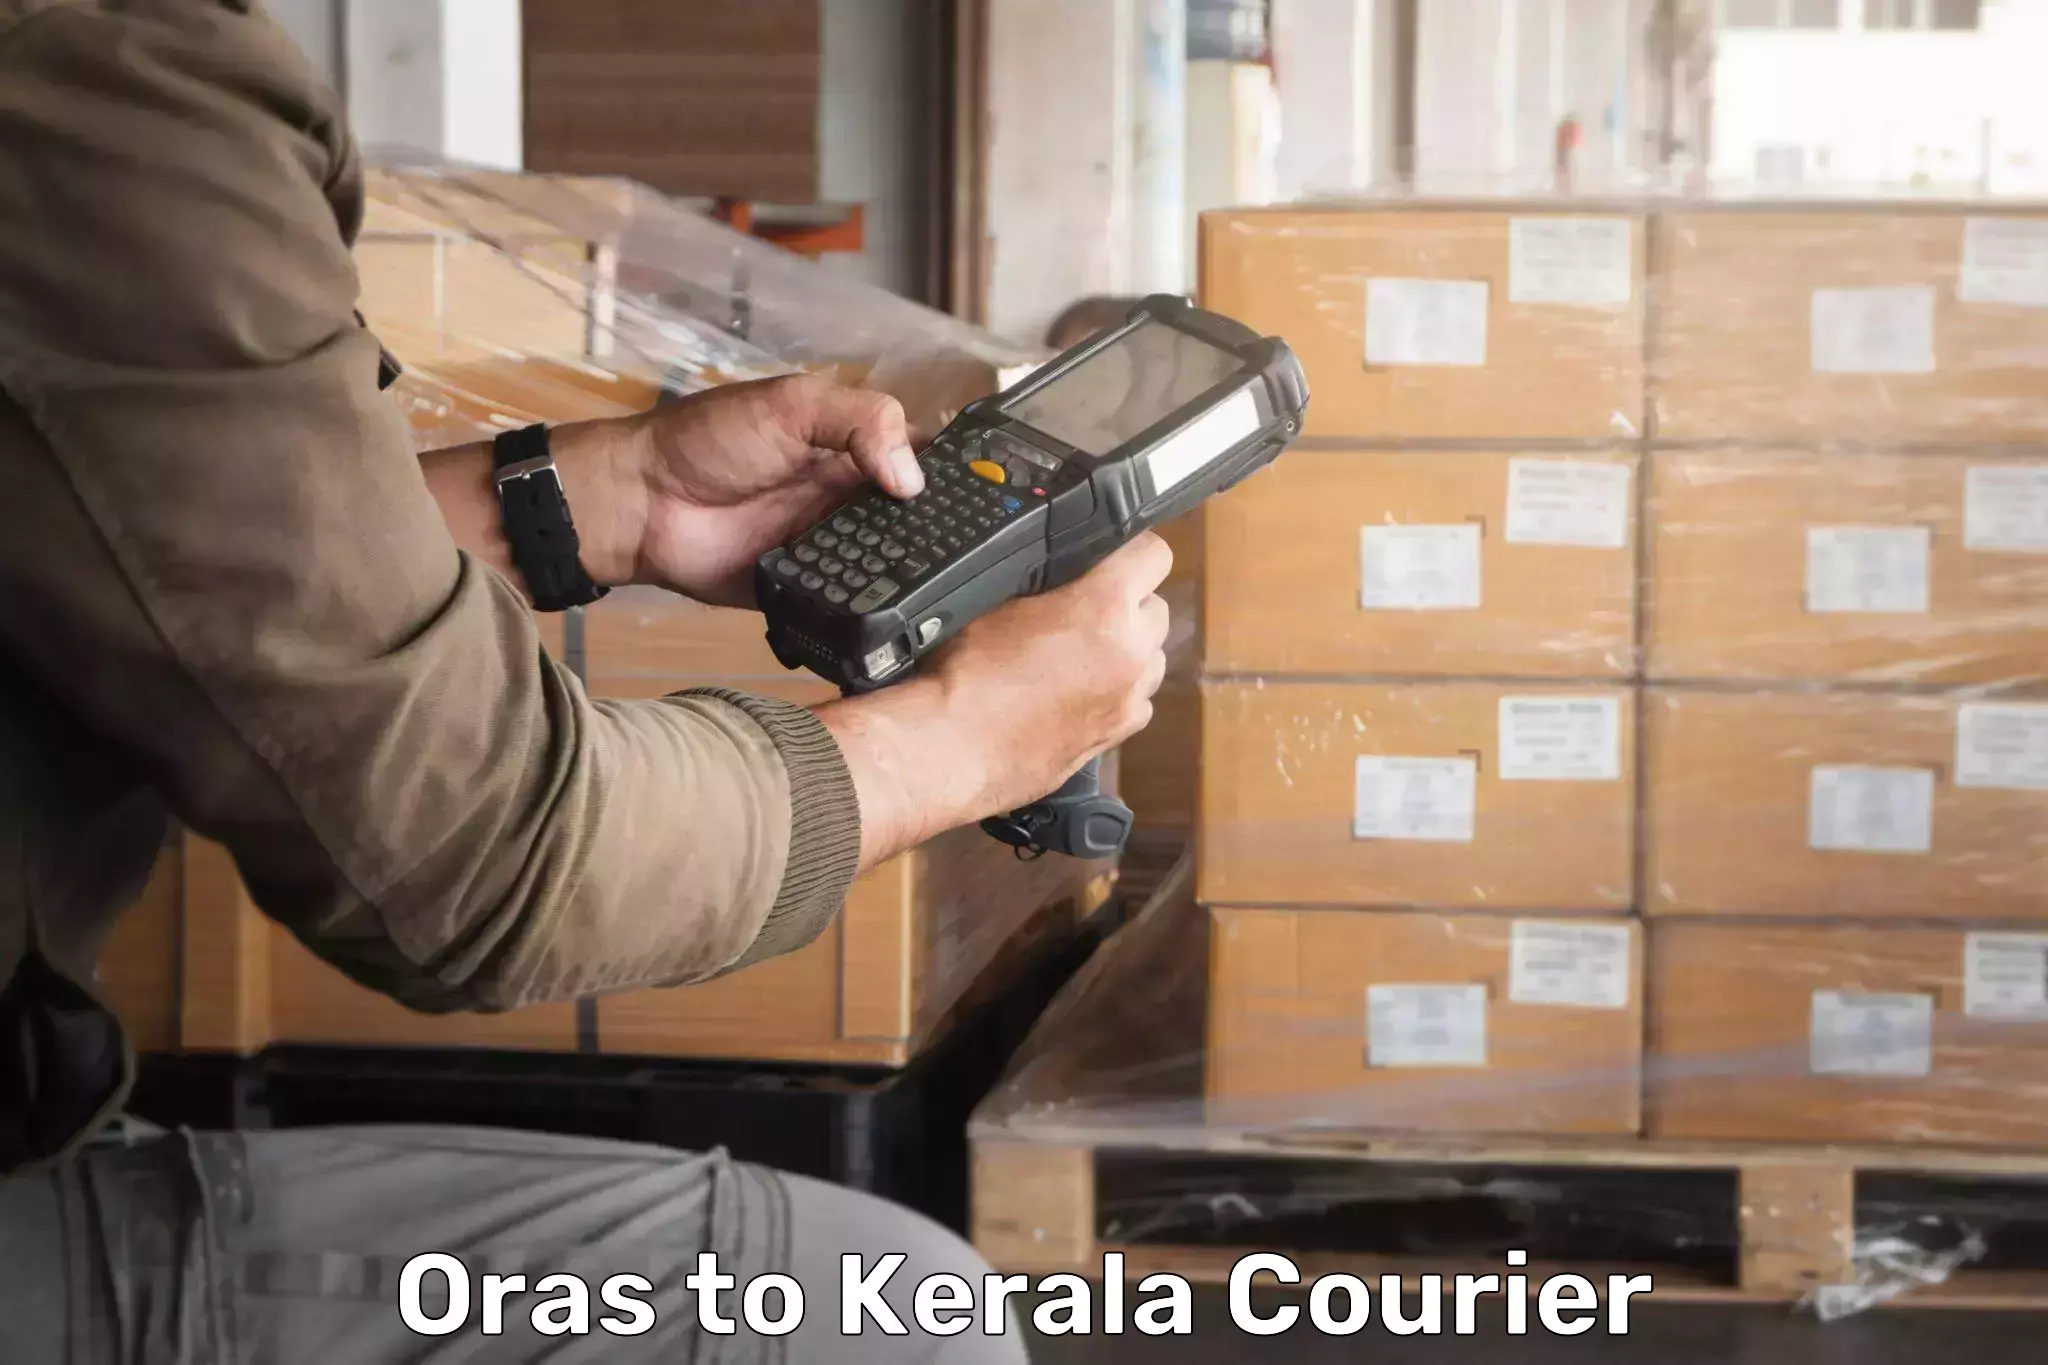 Pharmaceutical courier Oras to Kerala